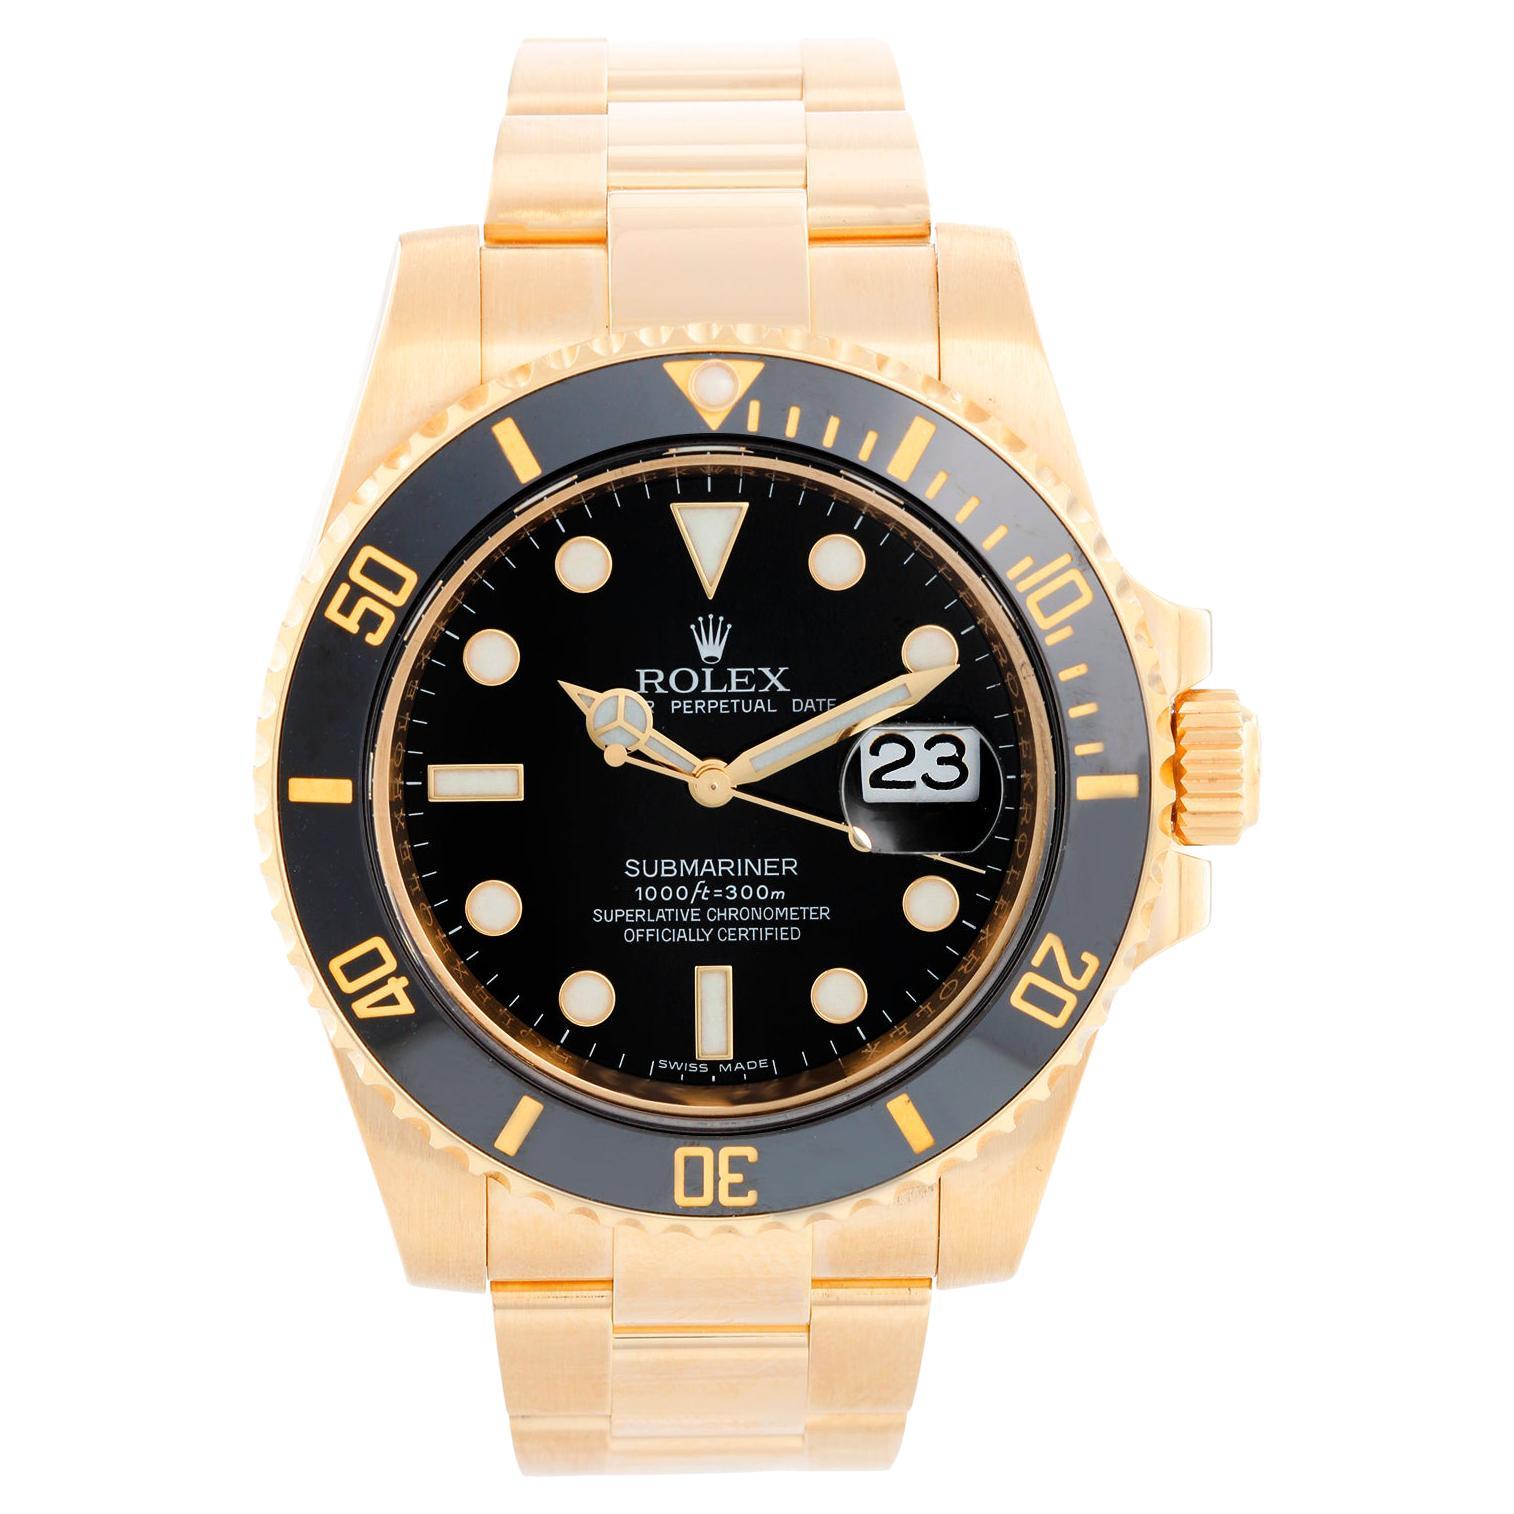 Rolex Submariner Men's 18k Gold Diver's Watch 116618